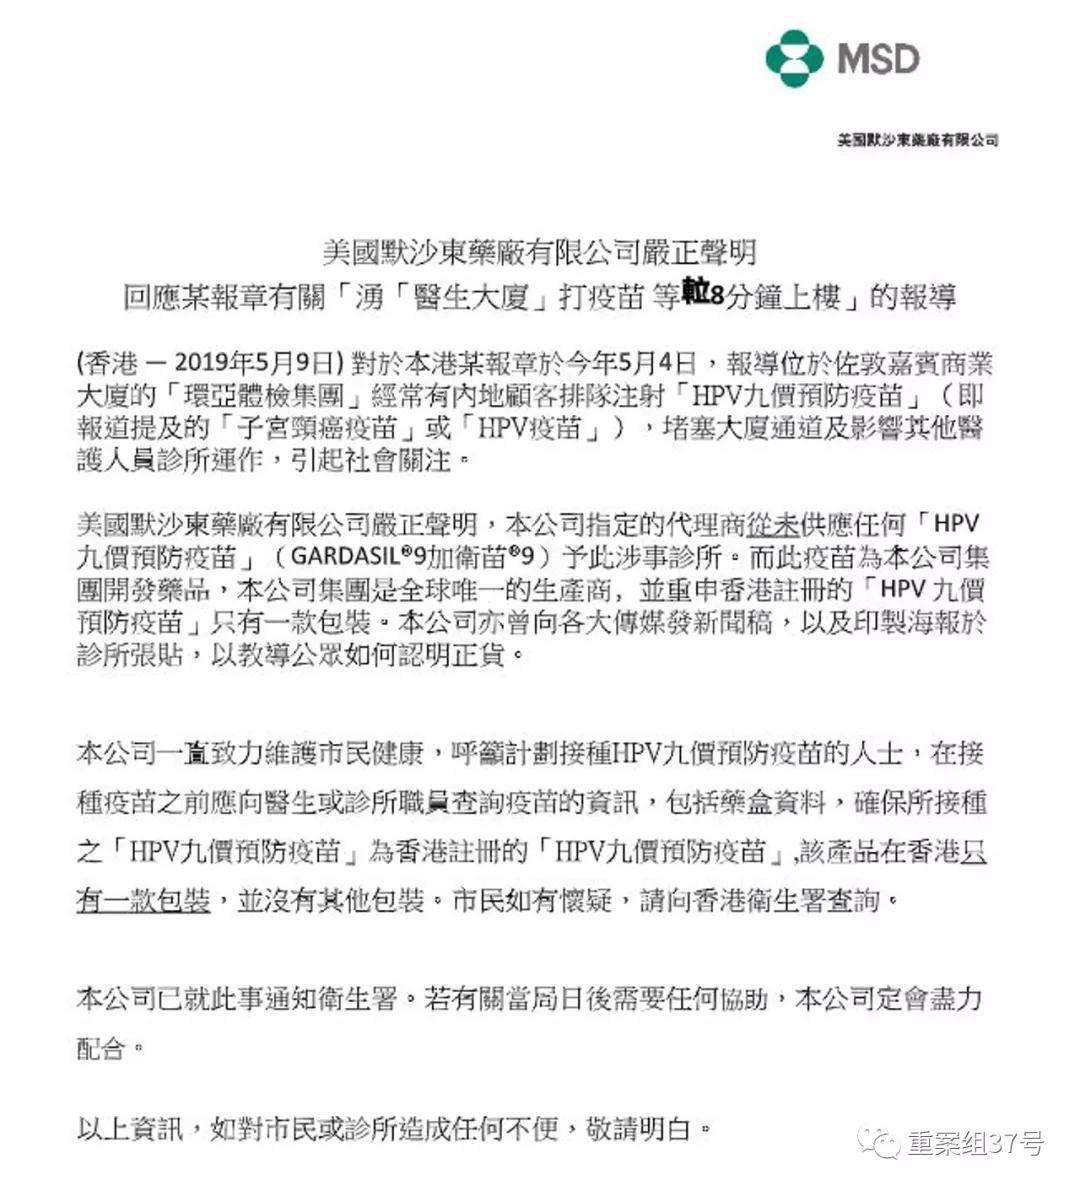 香港HPV水货针来源成谜 消费者疑发现水货外包装